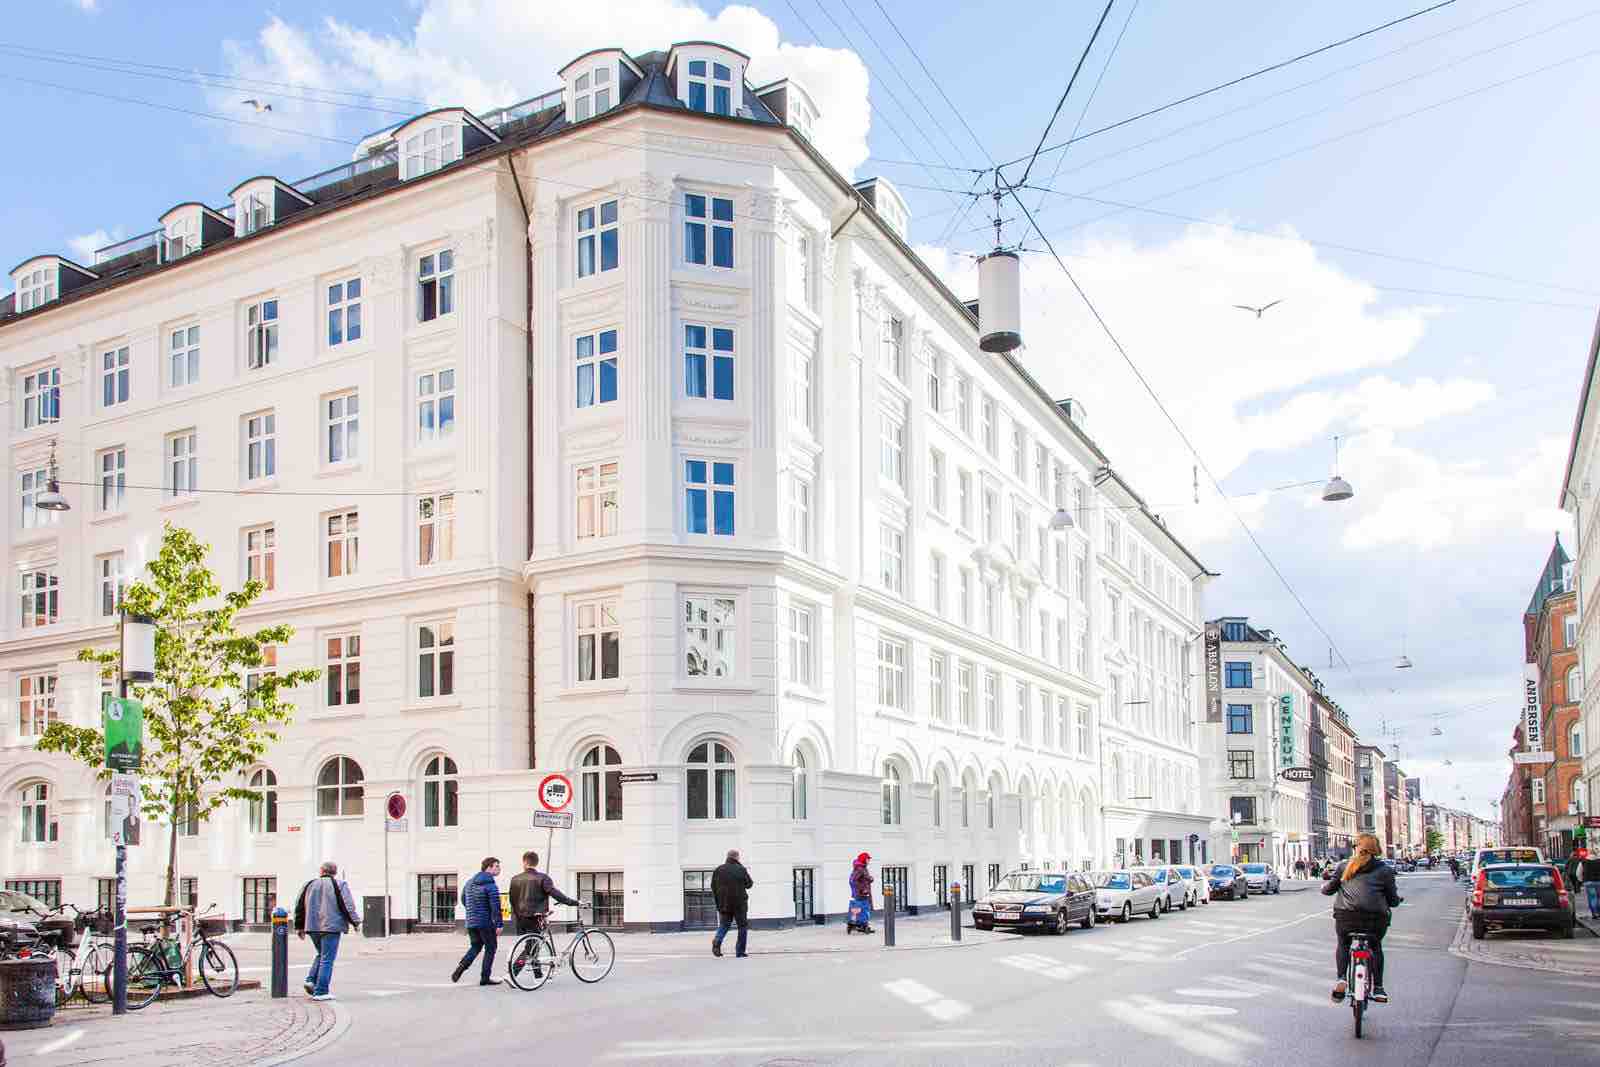 Hotelophold i København